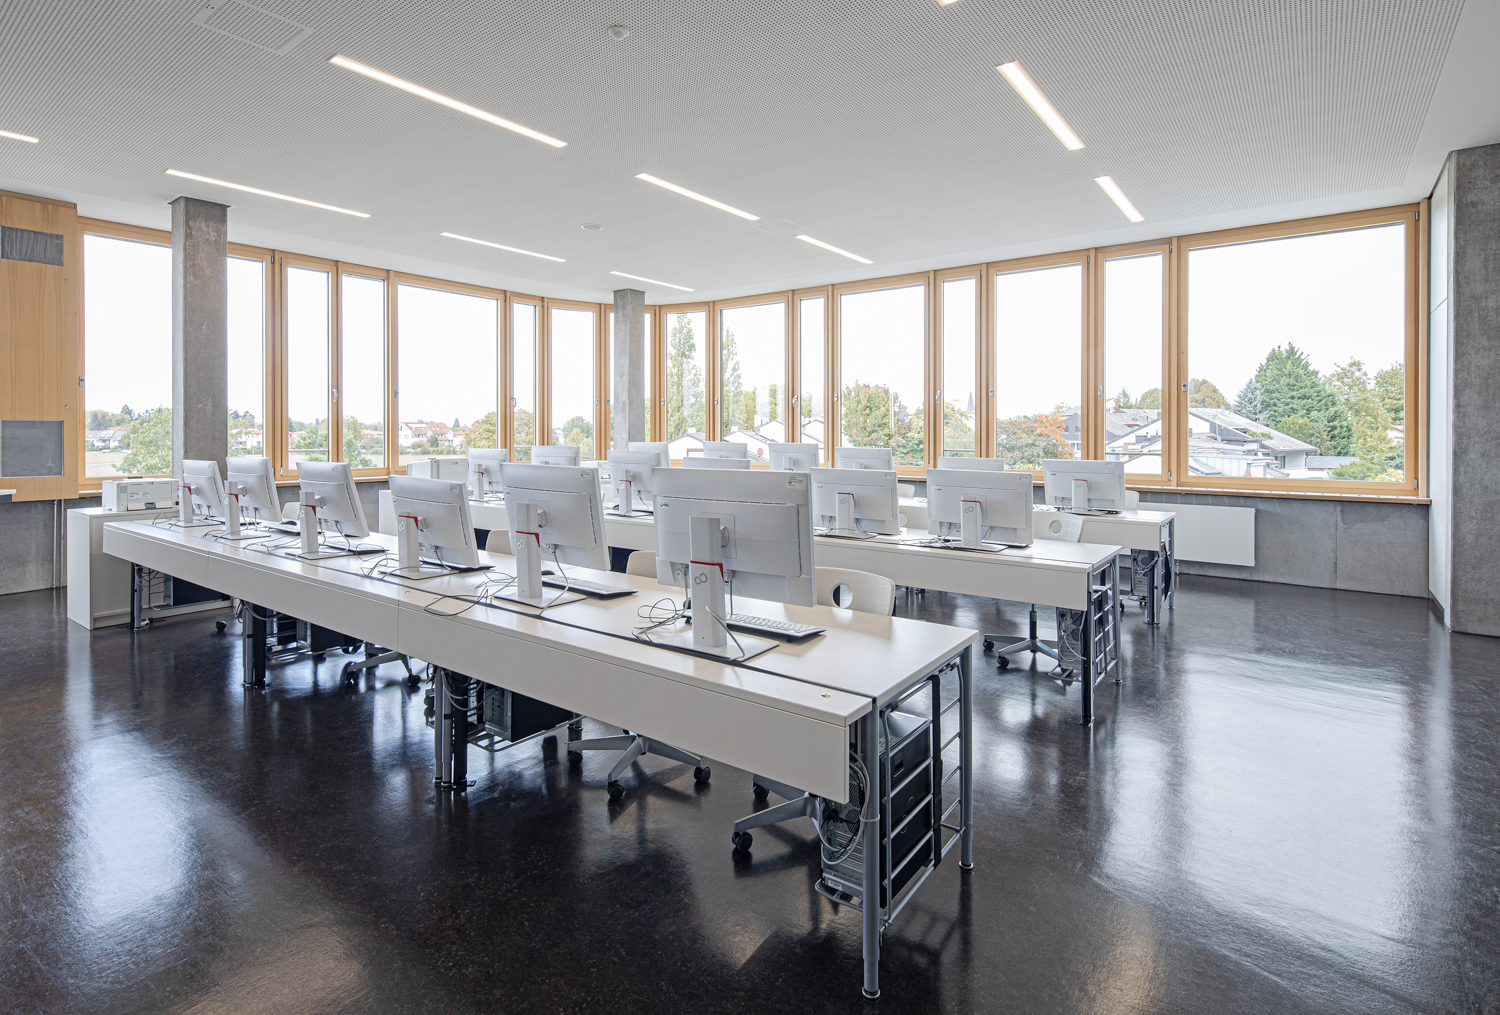 Interiorfotografie und Klassenraum von einer Beruflichen Gymnasium in Bad Krozingen